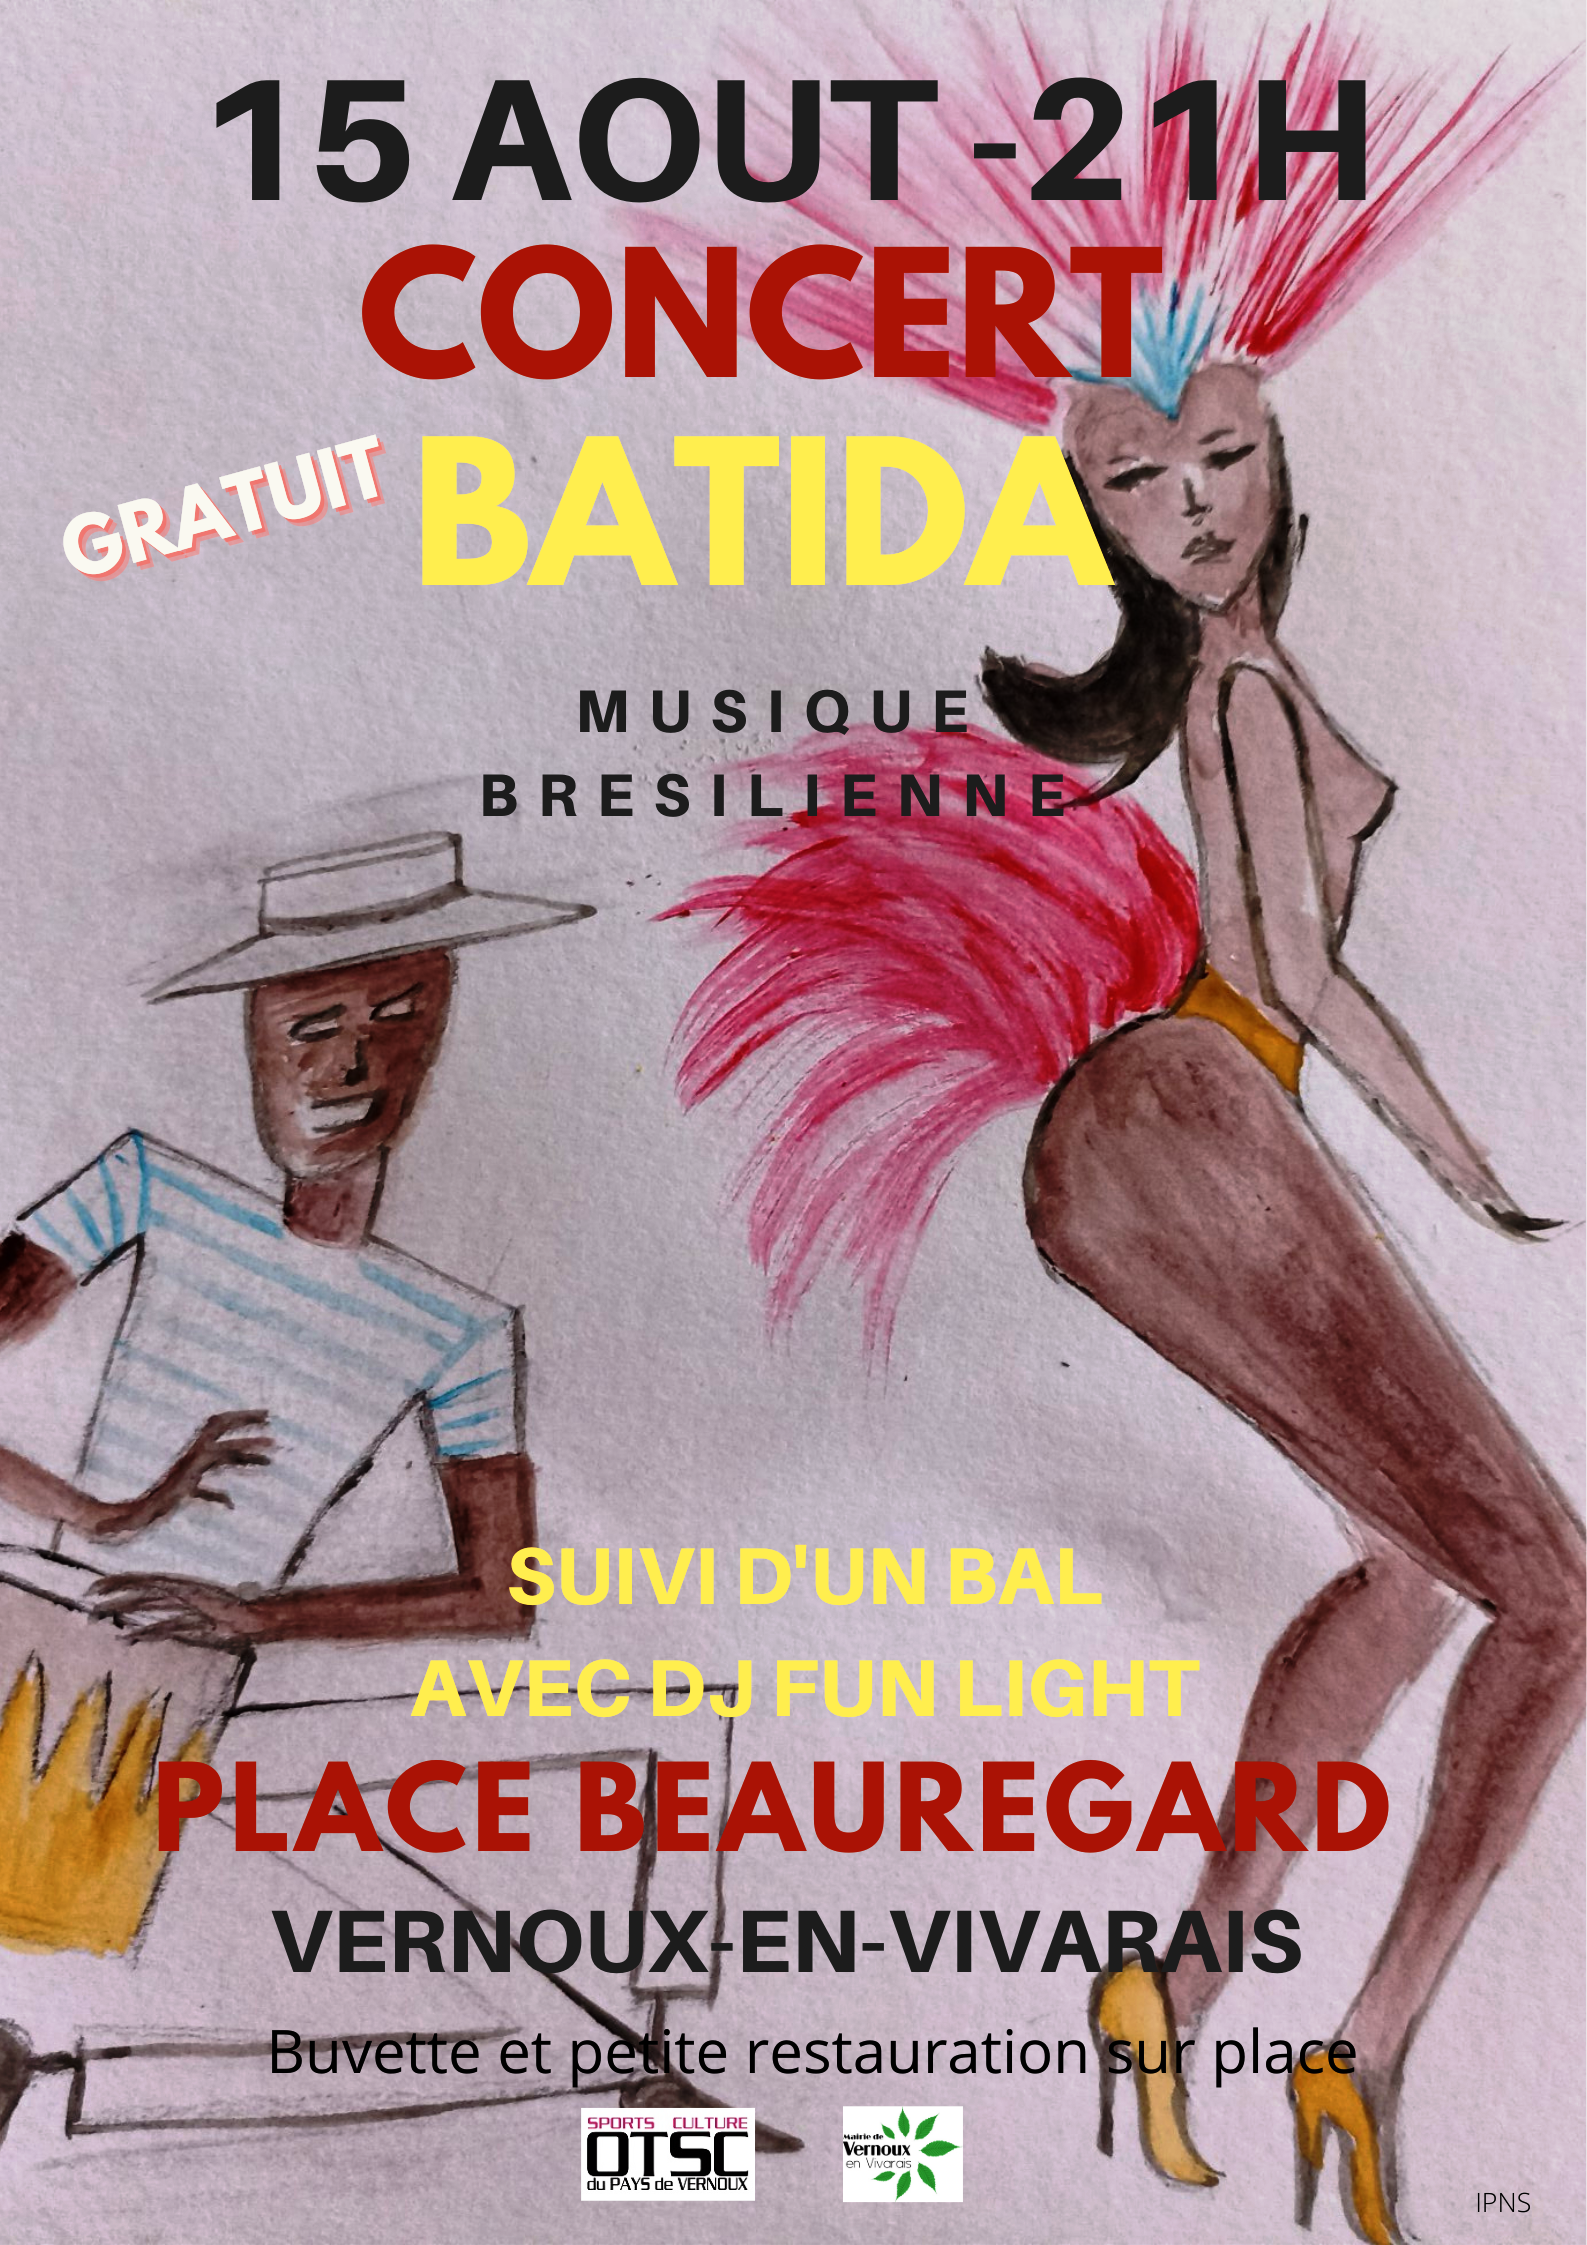 Rendez-vous futés ! : Soirée concert/bal : concert du groupe Batida (musique brésilienne) + bal avec sono DJ Fun Light